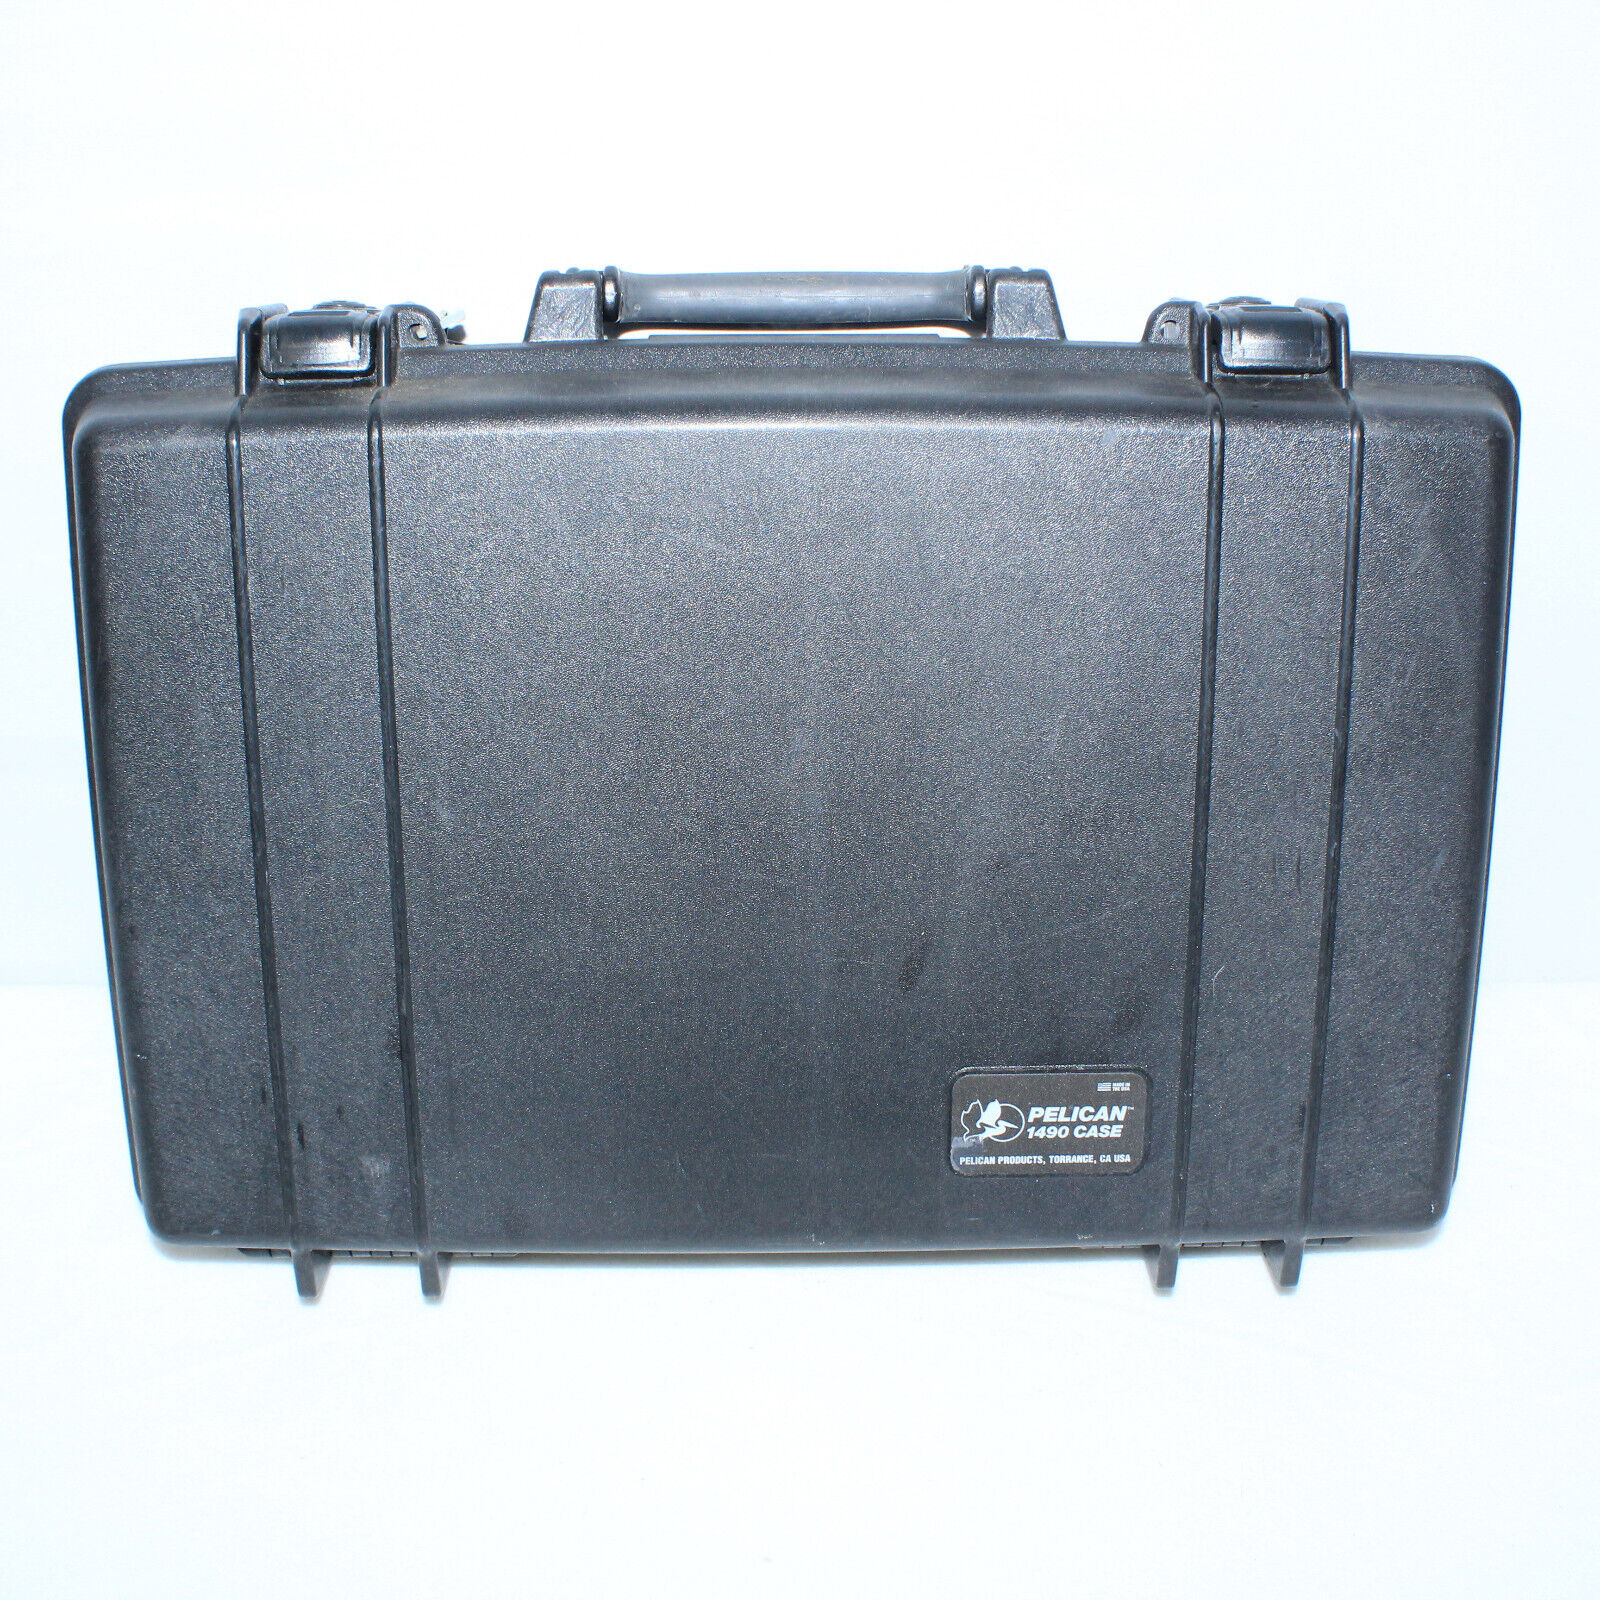 Black U.S. Military Surplus Waterproof Pelican 1490 Protector Laptop Case